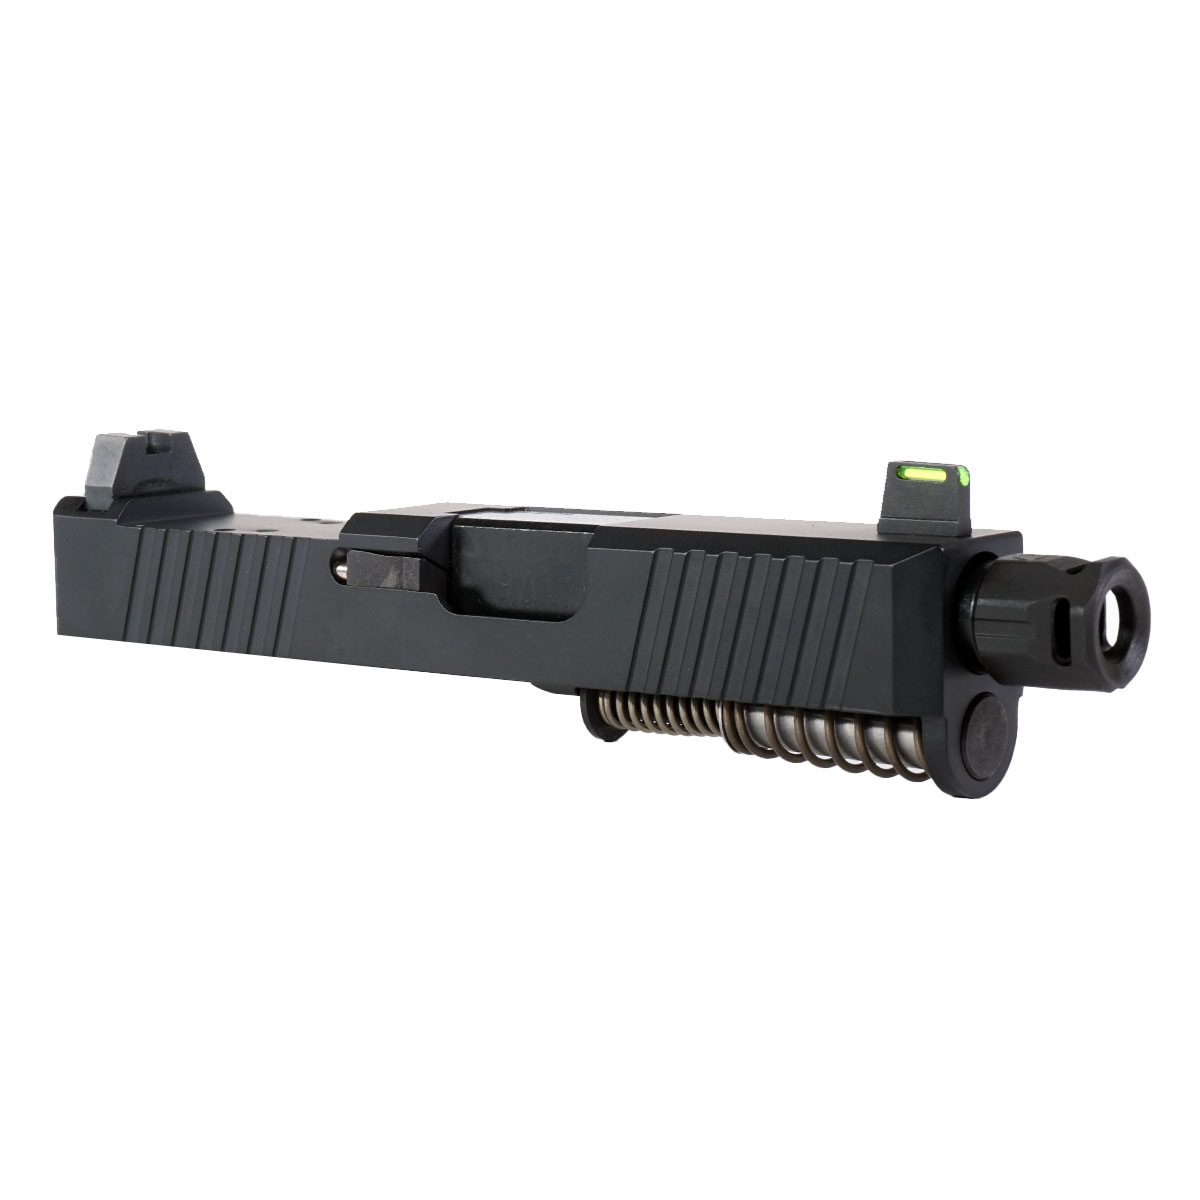 DD 'Bad Company' 9mm Complete Slide Kit - Glock 26 Gen 1-3 Compatible